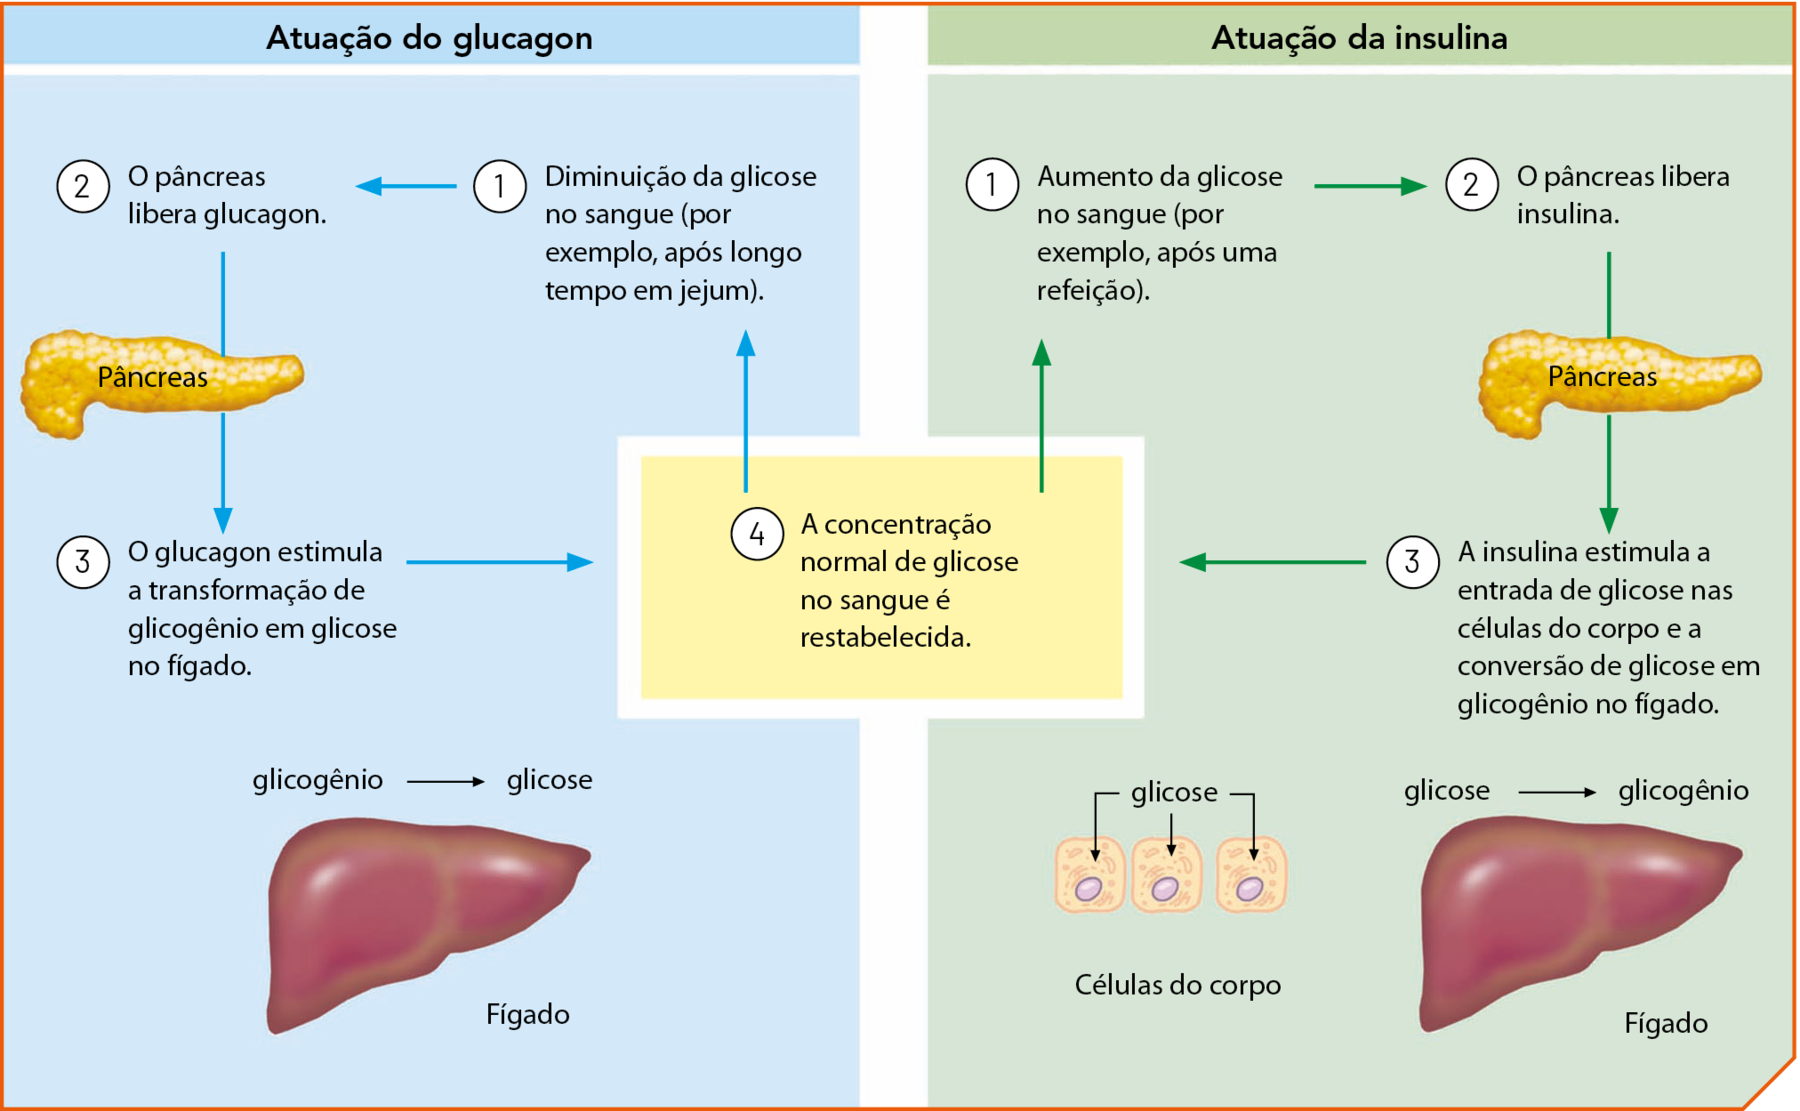 Esquema. Dois quadros, um de fundo azul indicando a atuação do glucagon e outro de fundo verde indicando a atuação da insulina. Atuação do glucagon. 1: Diminuição da glicose no sangue (por exemplo, após longo tempo em jejum). 2: O pâncreas libera glucagon. Ilustração de pâncreas. 3: O glucagon estimula a transformação de glicogênio em glicose no fígado. Ilustração de fígado. Glicogênio seta para: glicose. 4: A concentração normal de glicose no sangue é restabelecida. Atuação da insulina. 1: Aumento da glicose no sangue (por exemplo, após uma refeição). 2: O pâncreas libera insulina. Ilustração de pâncreas. 3: A insulina estimula a entrada de glicose nas células do corpo e a conversão de glicose em glicogênio no fígado. Ilustração de fígado. Glicose seta para: glicogênio. Ilustração de três células com setas indicando a entrada de glicose. 4: A concentração normal de glicose no sangue é restabelecida.